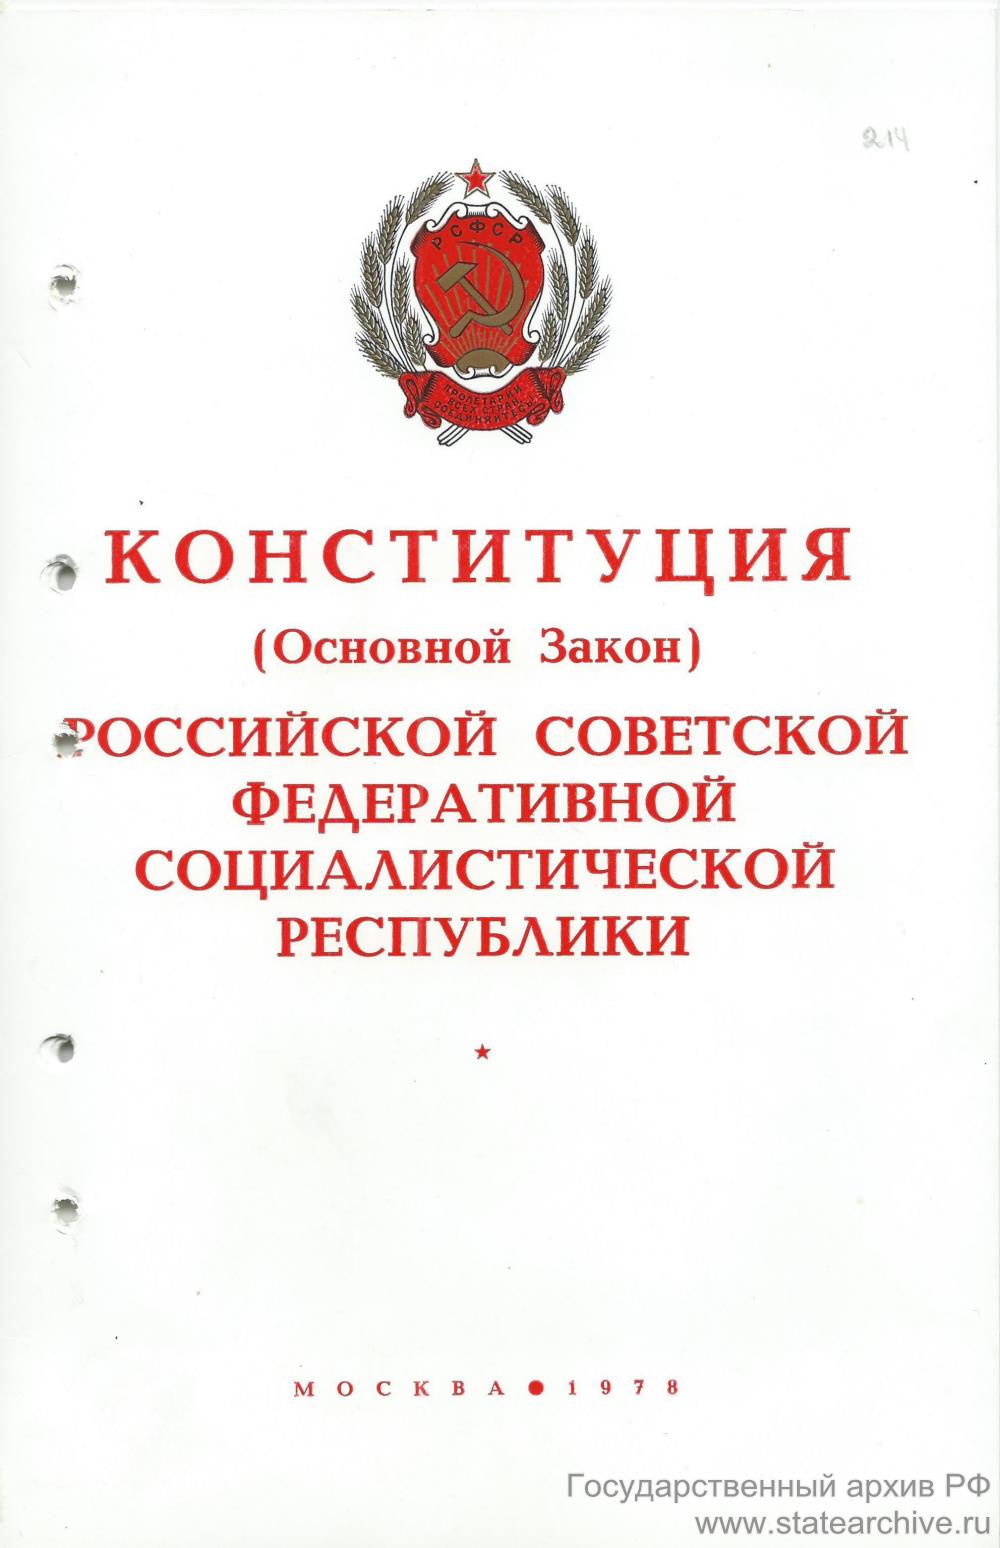 Органы власти конституции 1978